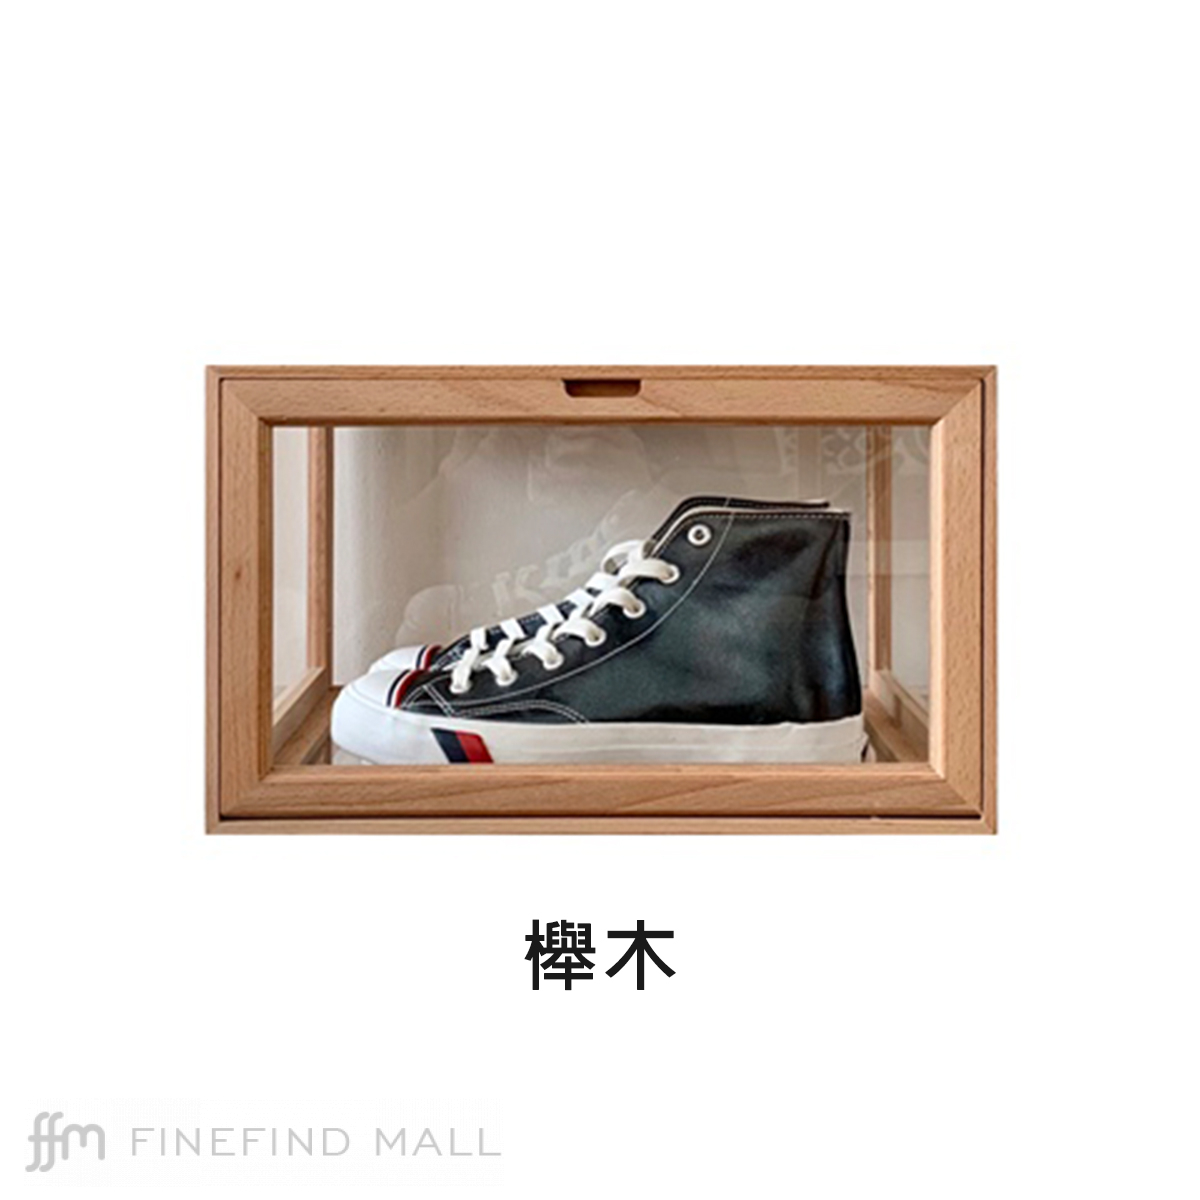 實木收藏品透明展示盒(M) - Finefind Mall | 居家精品及生活百貨